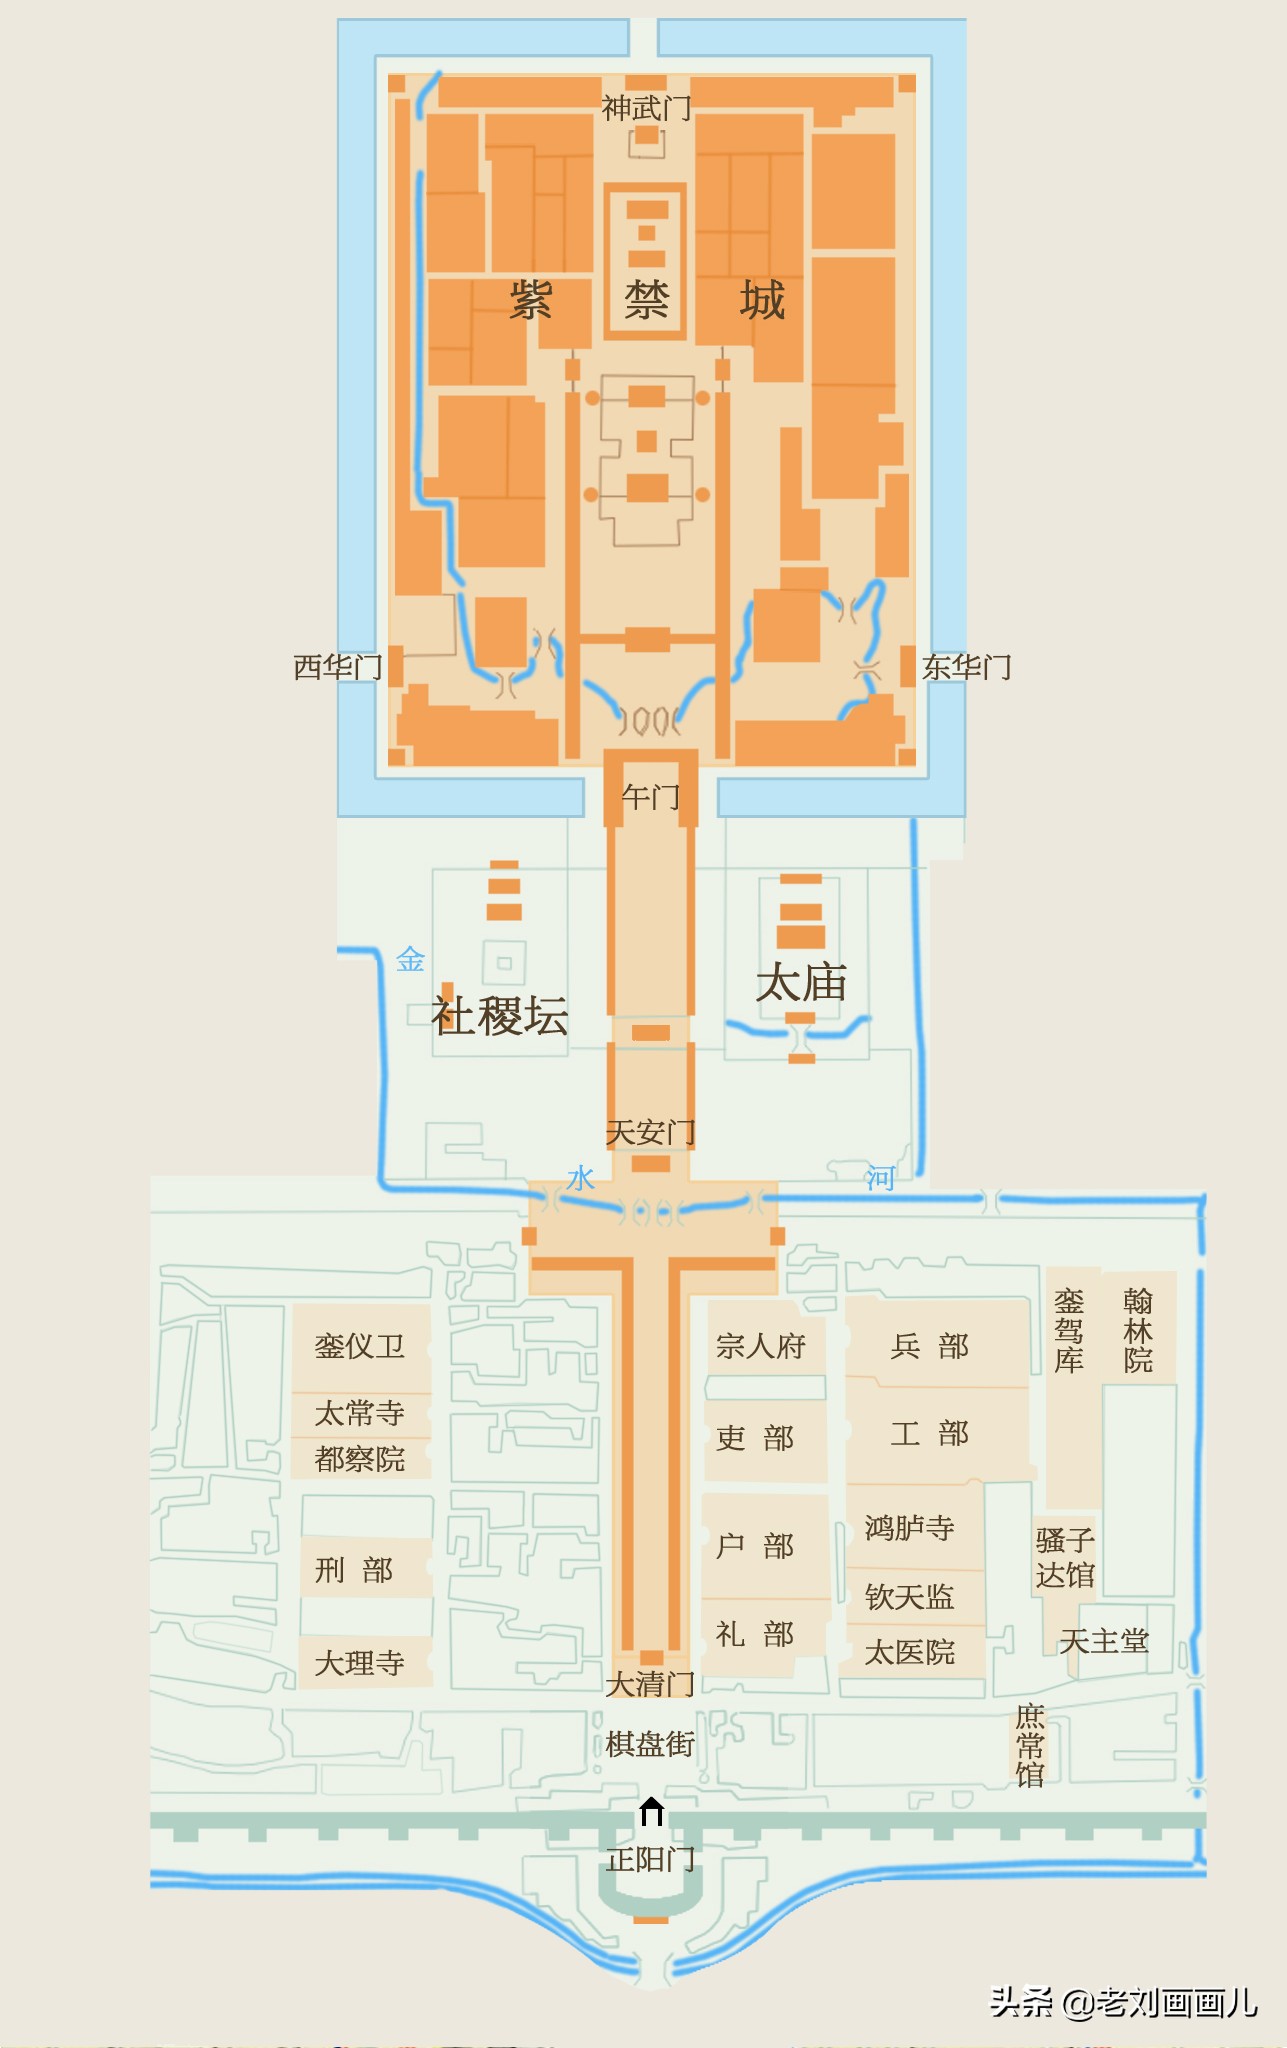 说说将要预约参观的天安门广场（2021年 12月15日起预约）